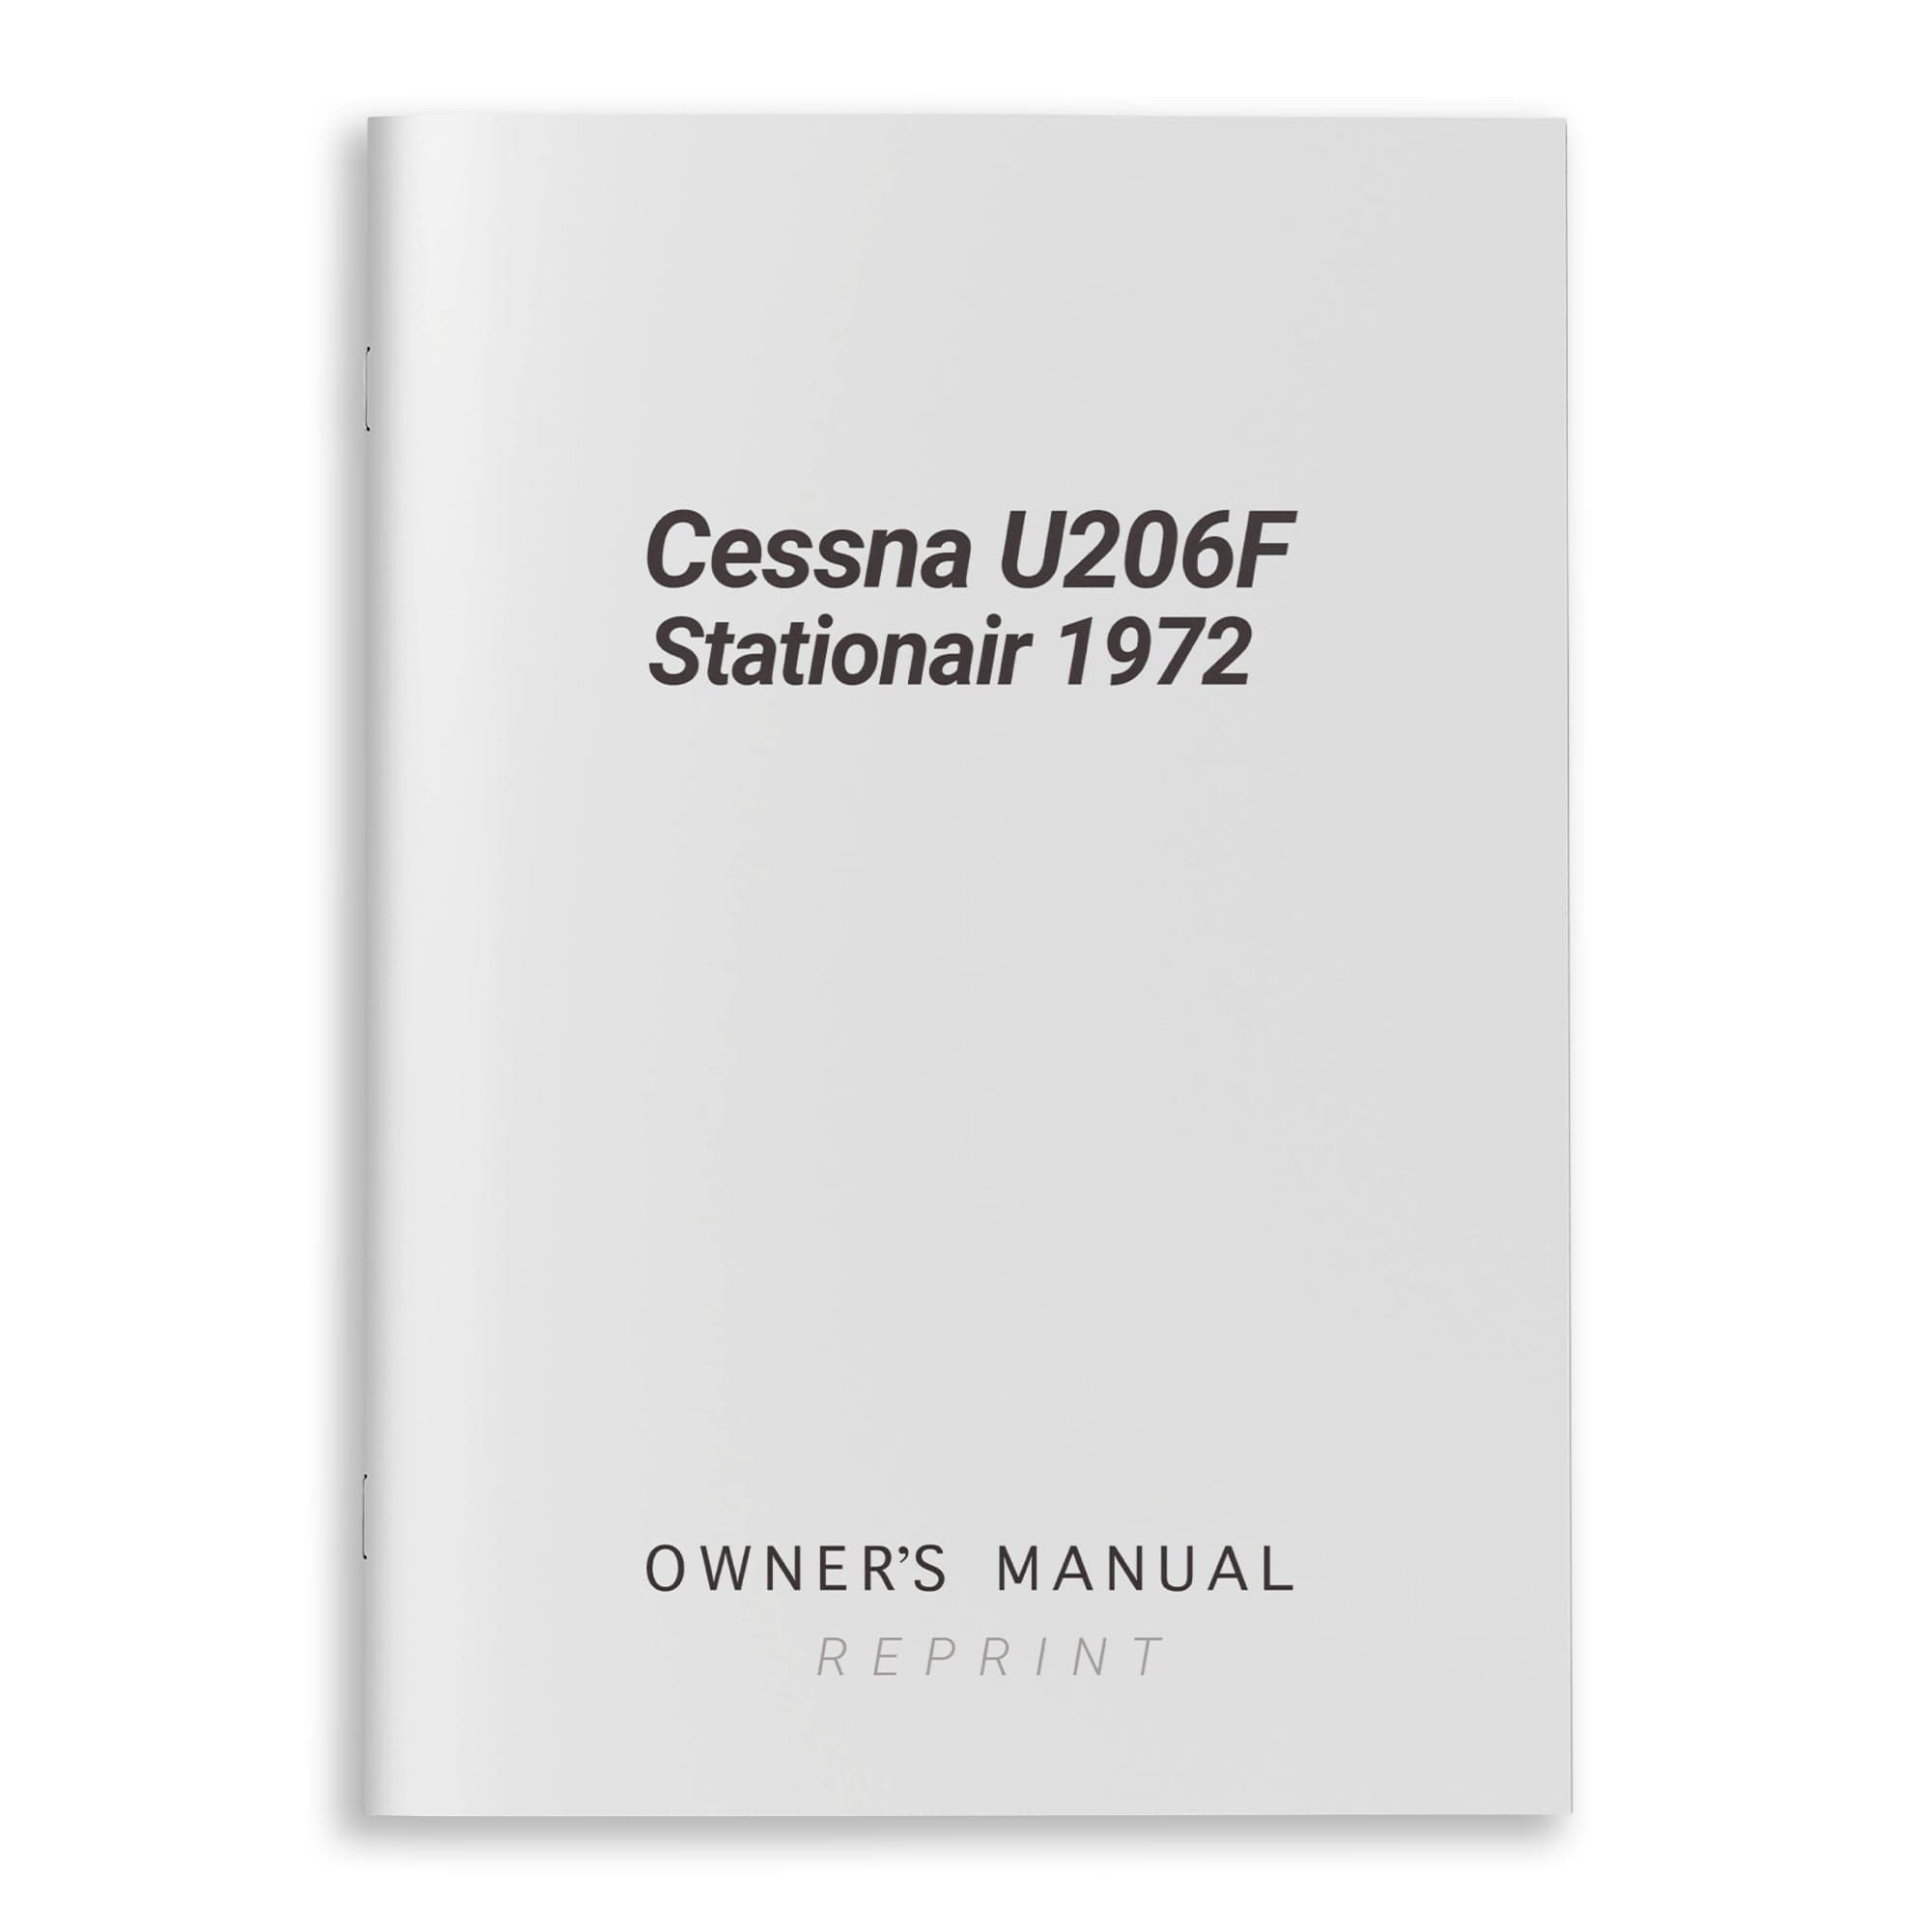 Cessna U206F Stationair 1972 Owner's Manual